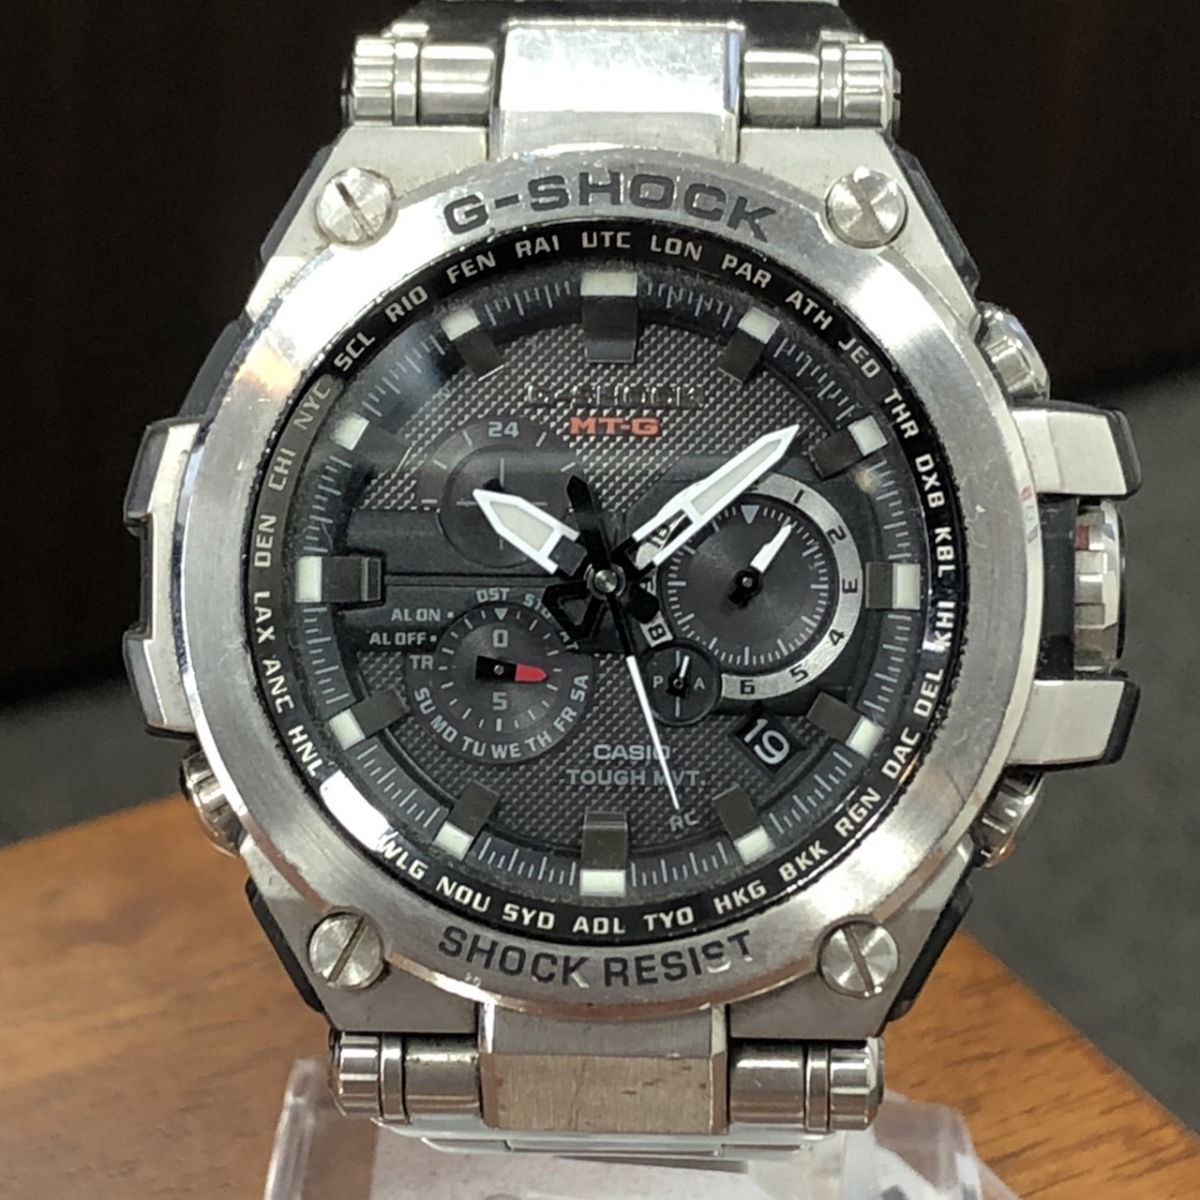 G-SHOCKのMTG-S1000D アナログ電波ソーラー腕時計 ステンレスベルトの買取実績です。